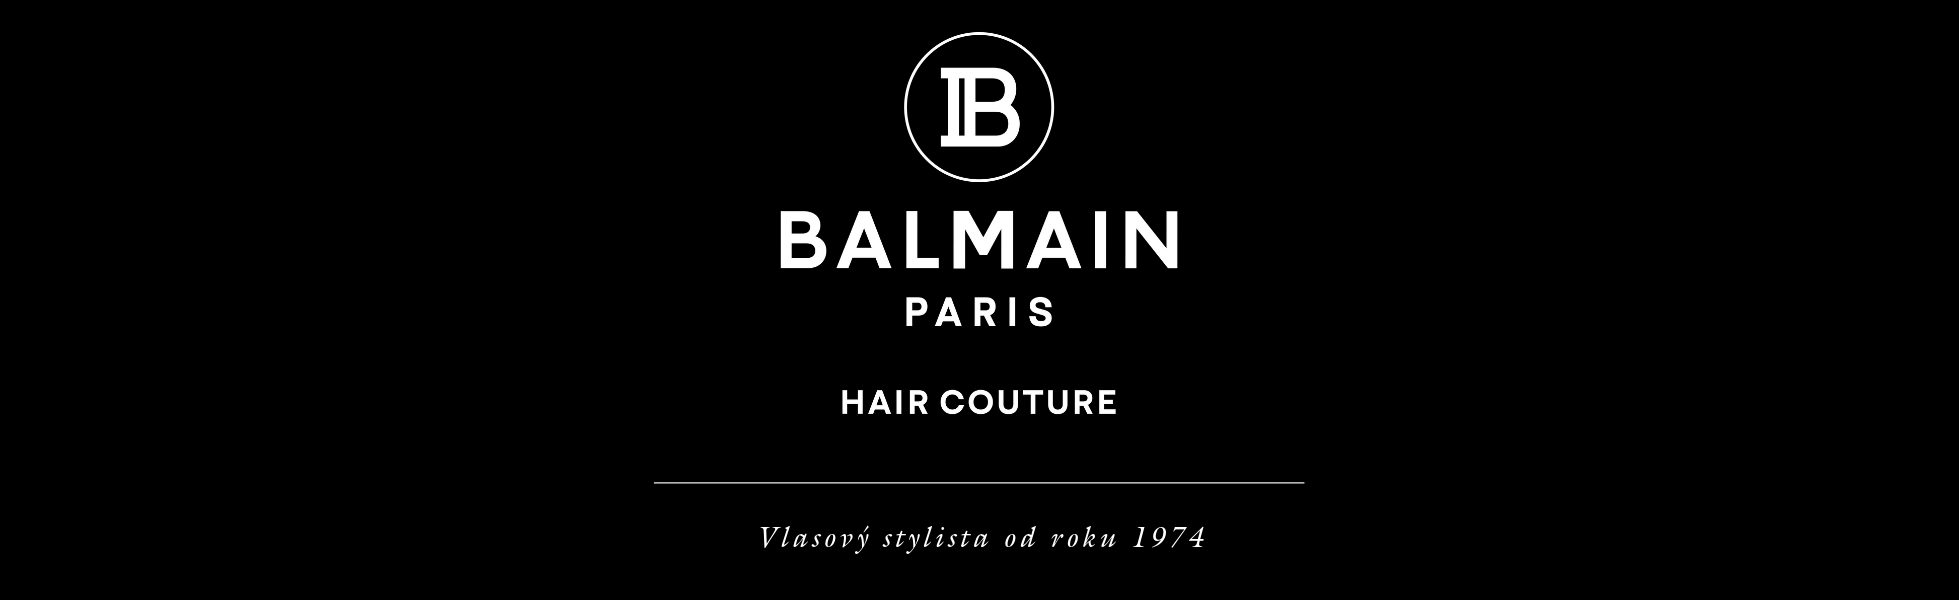 Balmain_logo